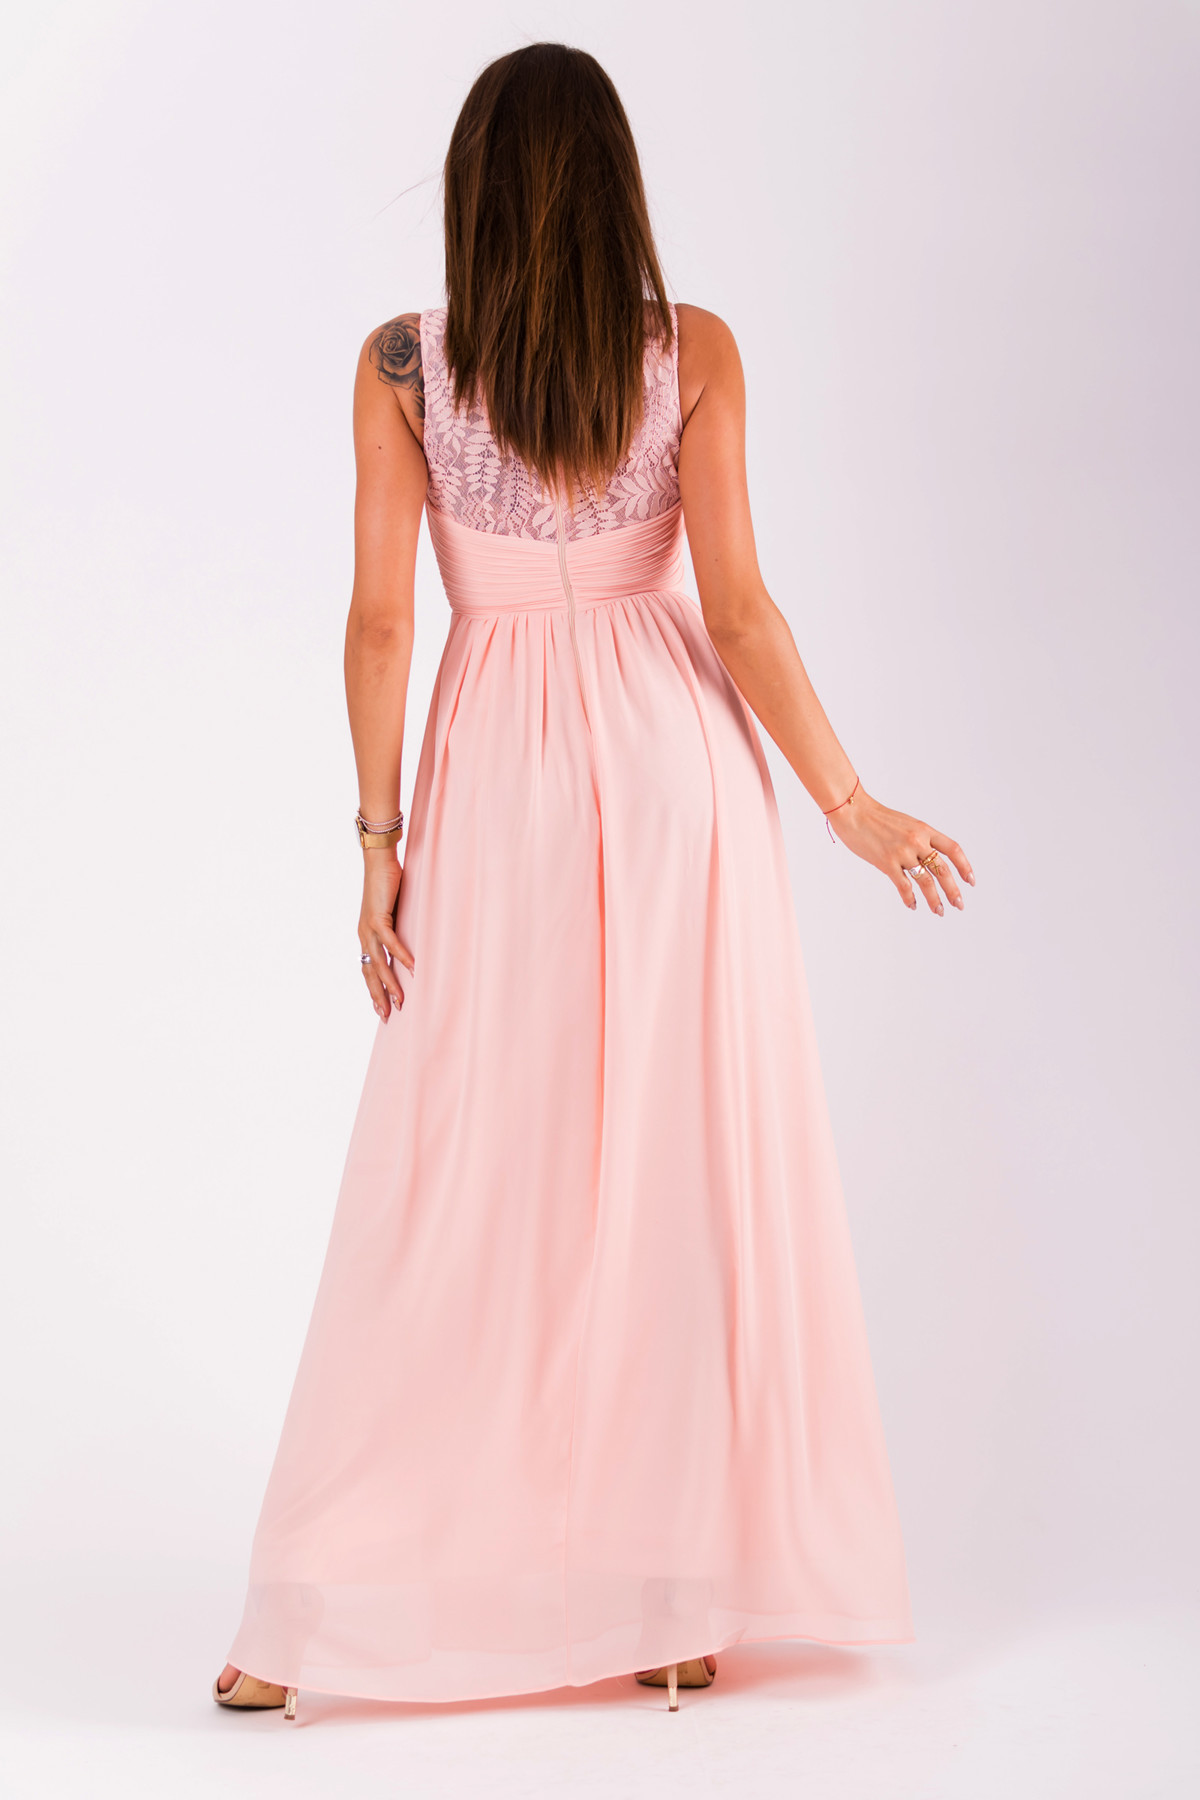 Společenské dámské šaty bez rukávů dlouhé růžové Růžová S model 15042527 - EVA&#38;LOLA